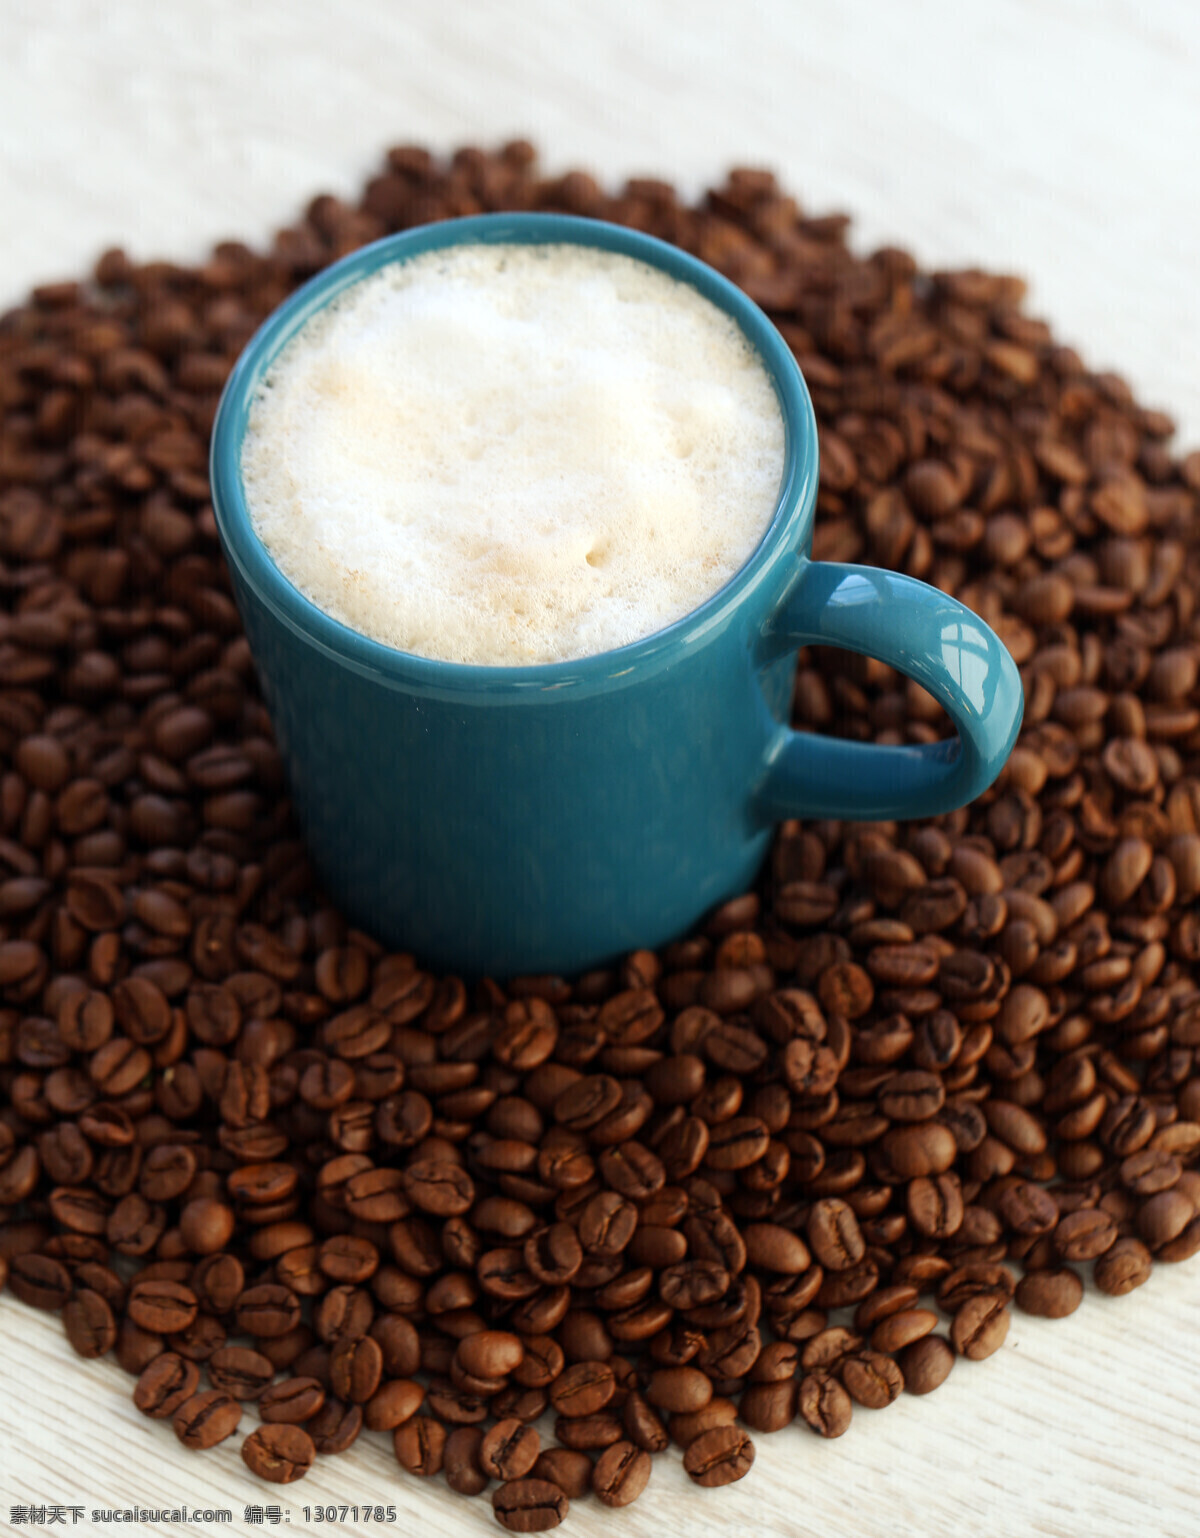 一杯 香 浓 咖啡 香浓咖啡 咖啡豆 咖啡杯 休闲饮品 食材原料 健康食品 酒水饮料 咖啡图片 餐饮美食